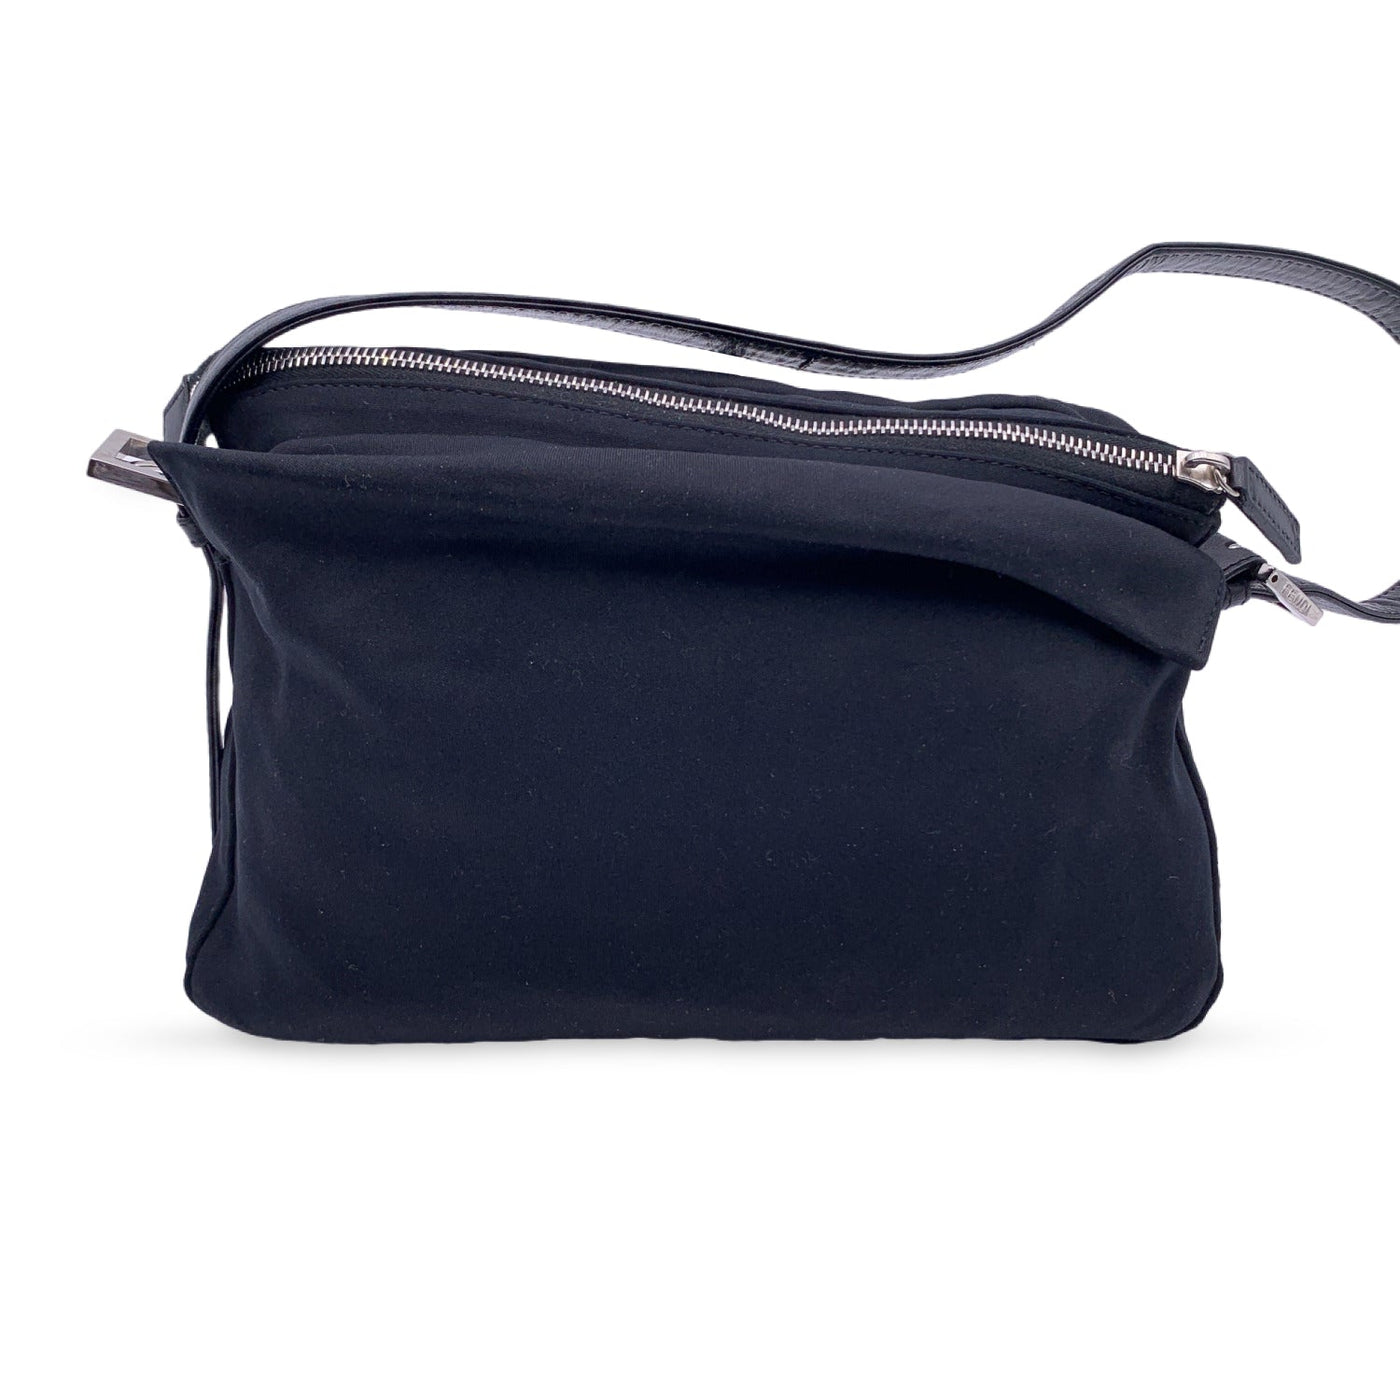 Baguette cloth handbag Fendi Black in Cloth - 17247128